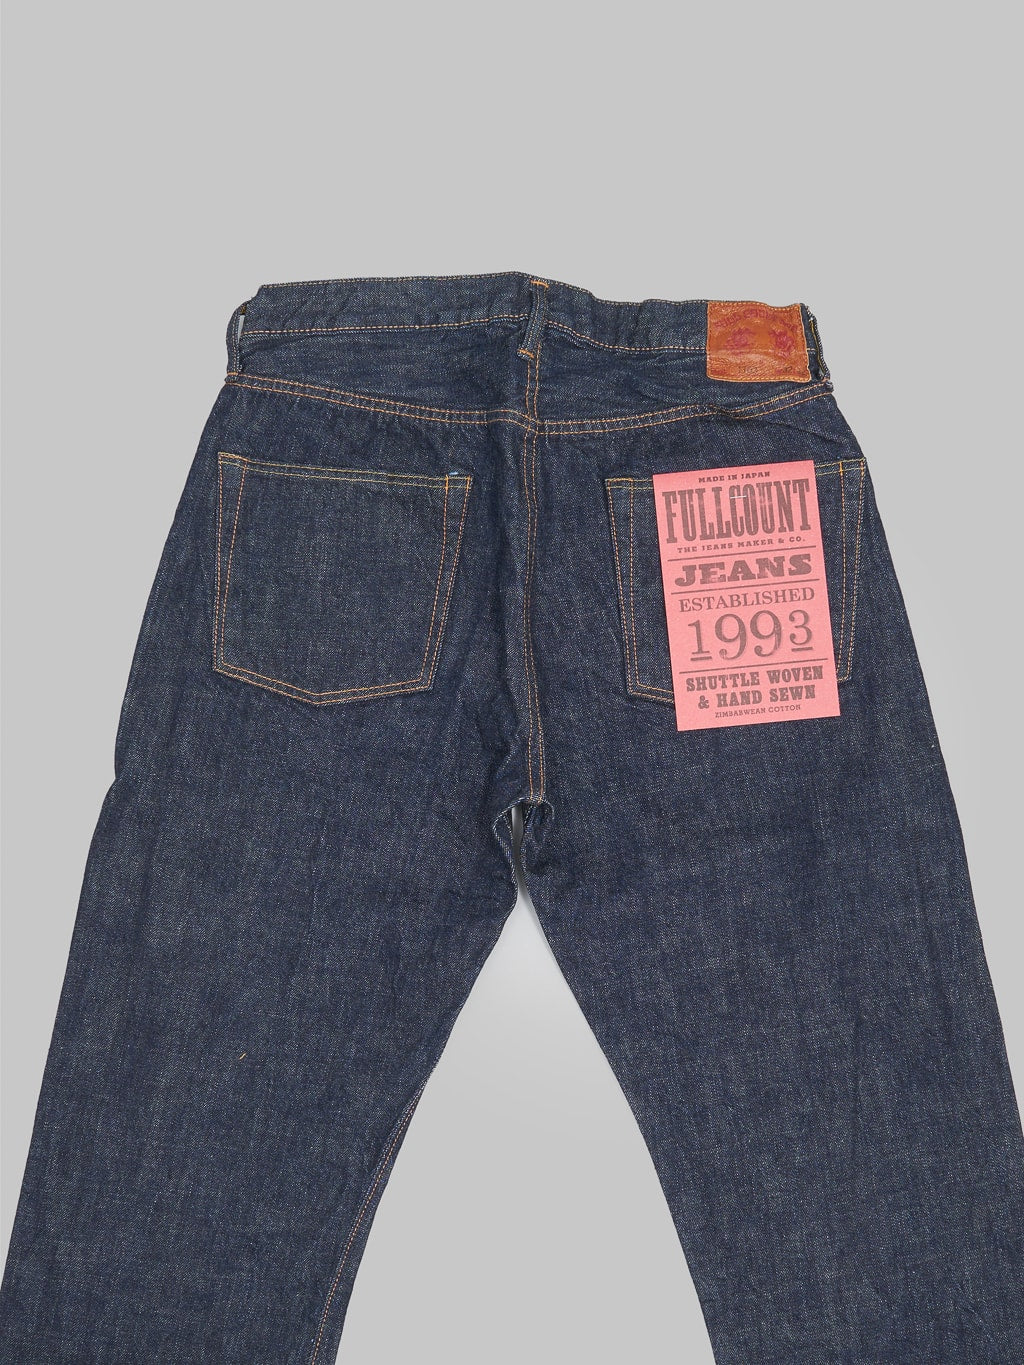 fullcount 1103 clean straight selvedge denim jeans back pockets